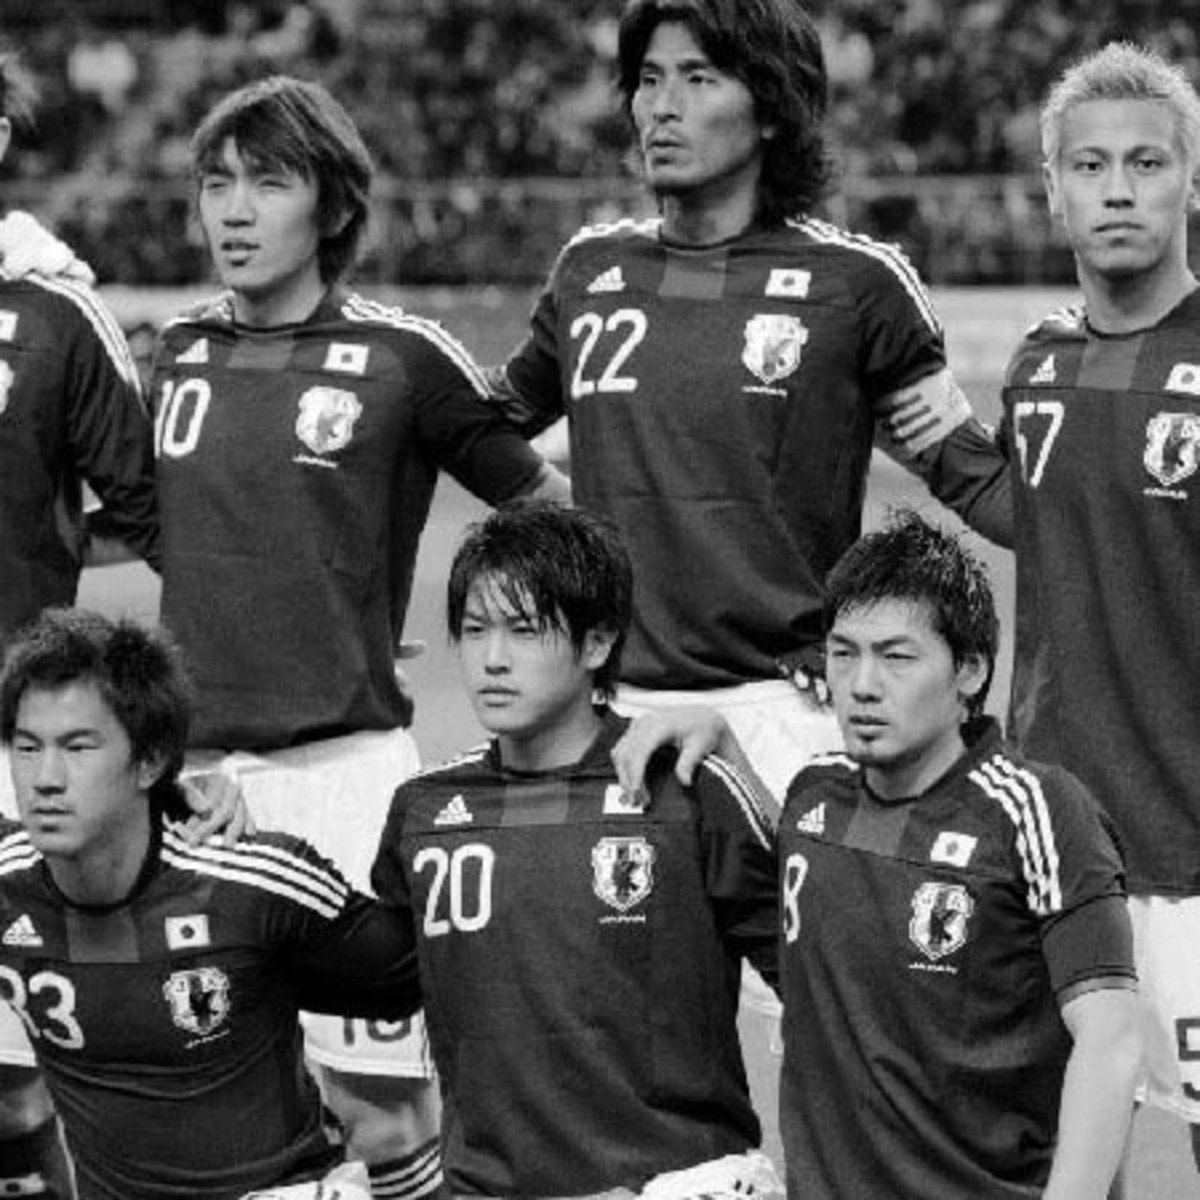 日本のサッカー界はヌルい 内田篤人の ストレート発言 が支持されるワケ Asagei Biz アサ芸ビズ